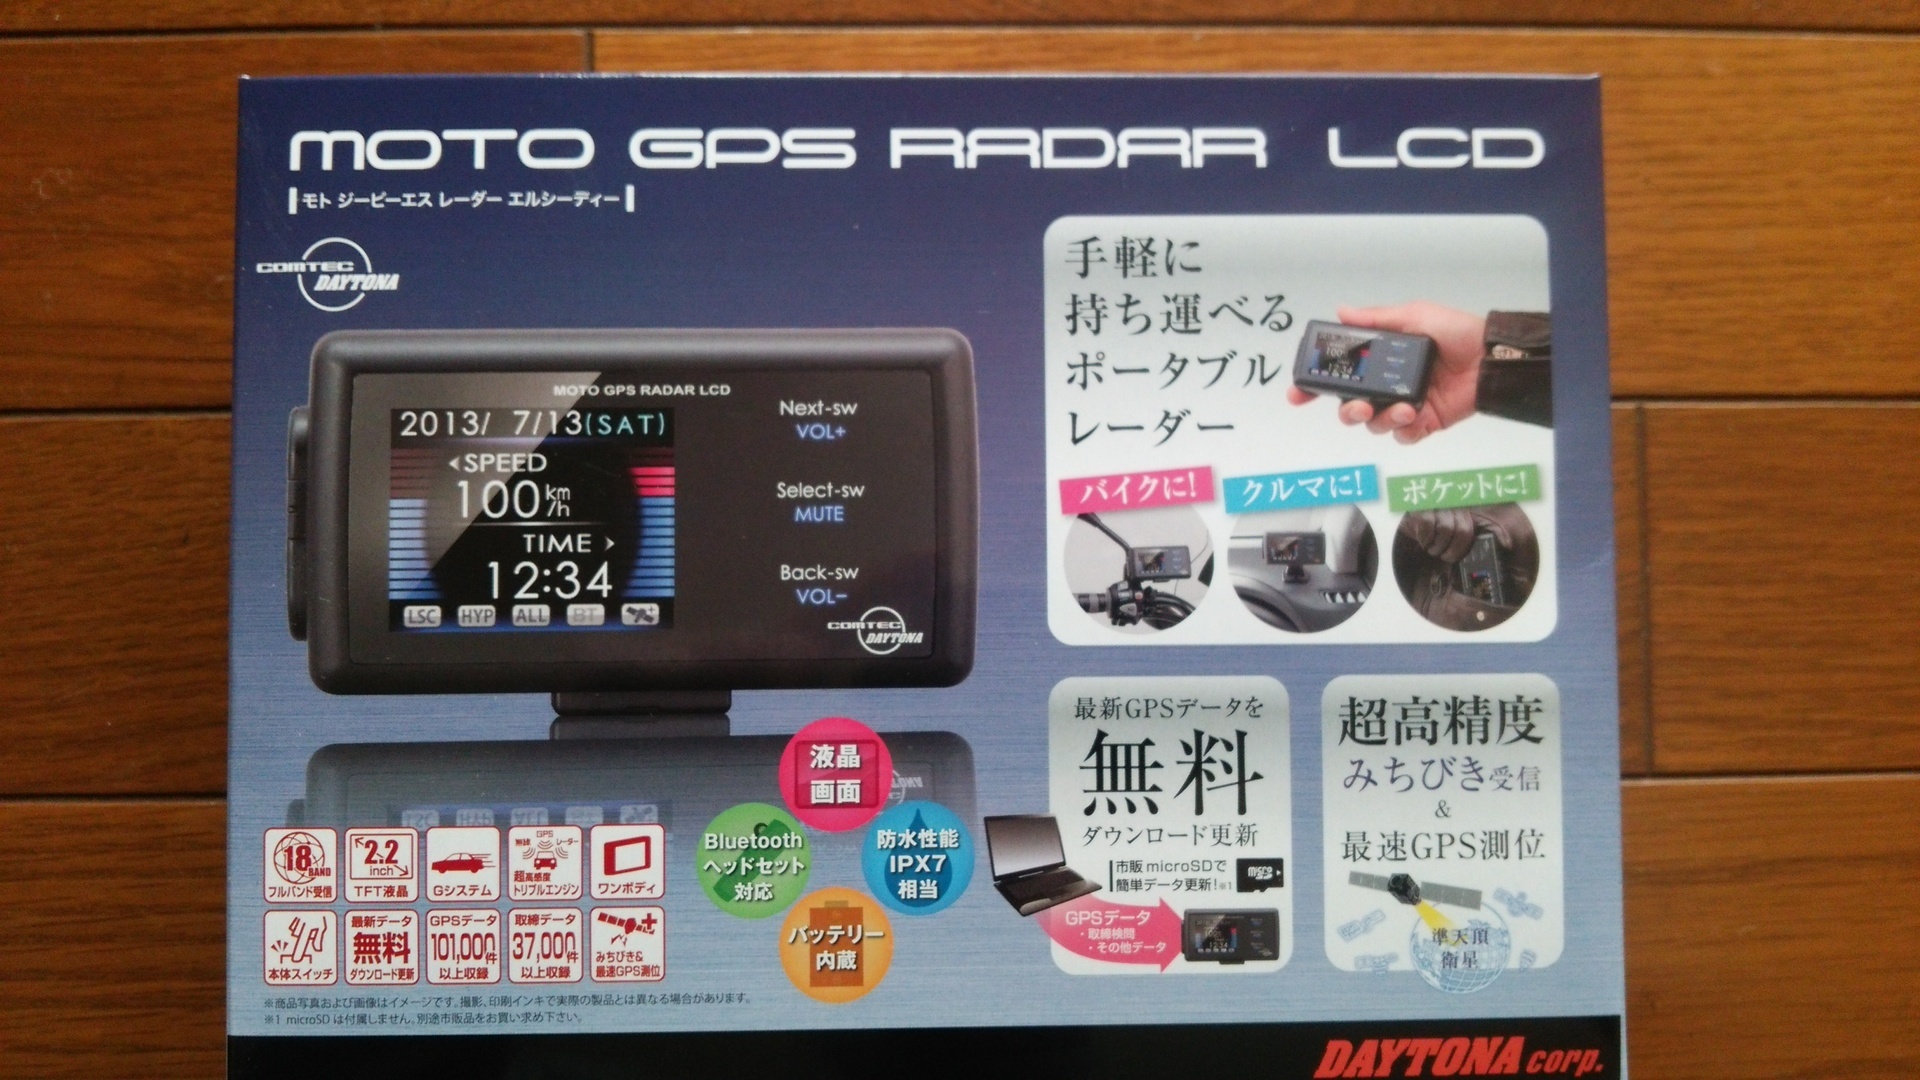 ブランド品専門の DAYTONA:デイトナ DAYTONA USBシガープラグコード MOTO GPS RADAR LCDオプション  terahaku.jp